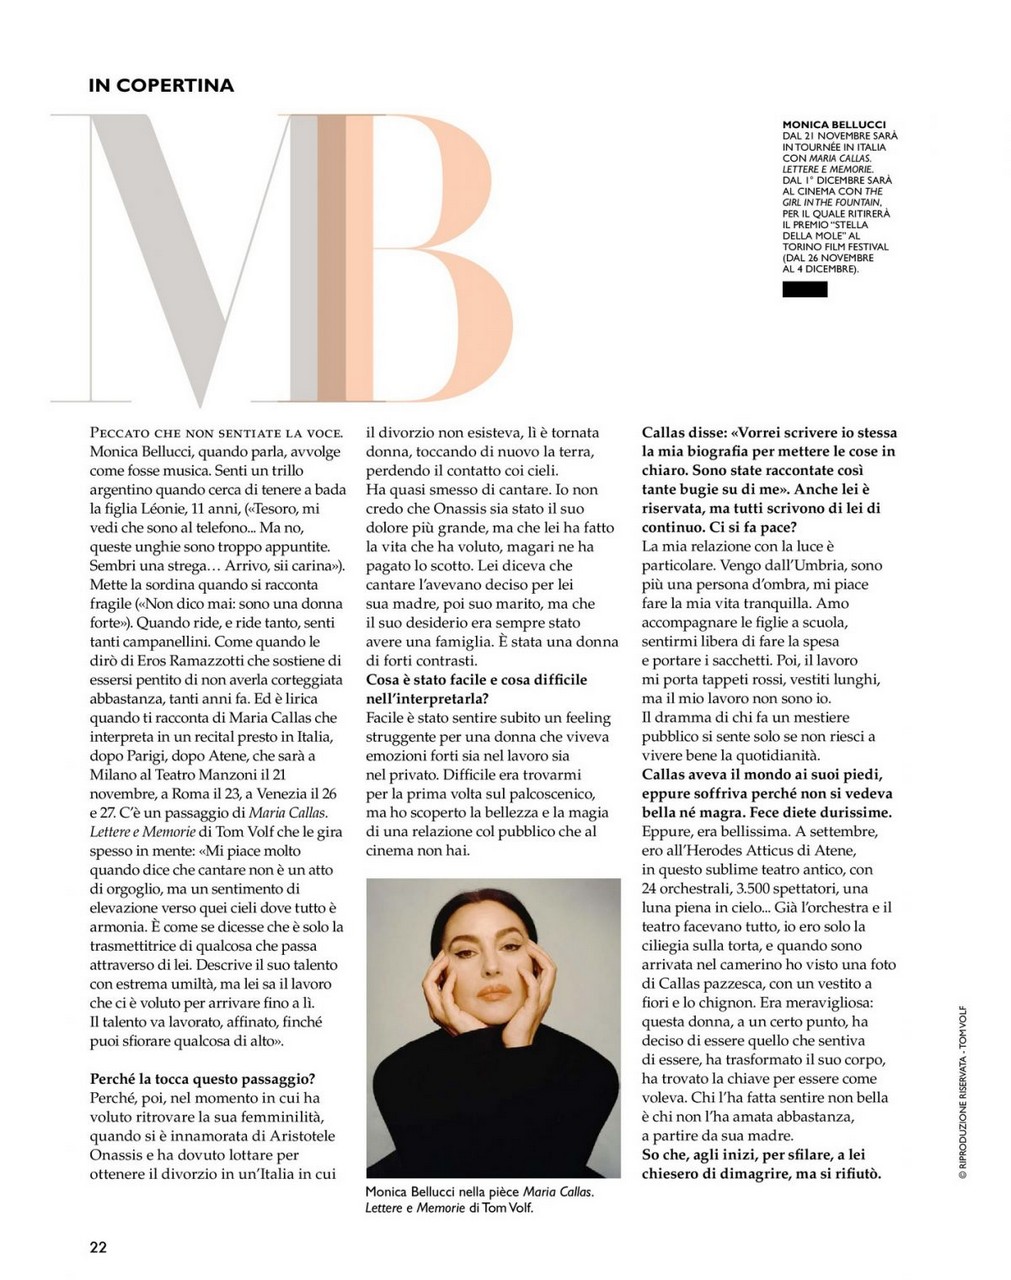 Monica Bellucci F Magazine November